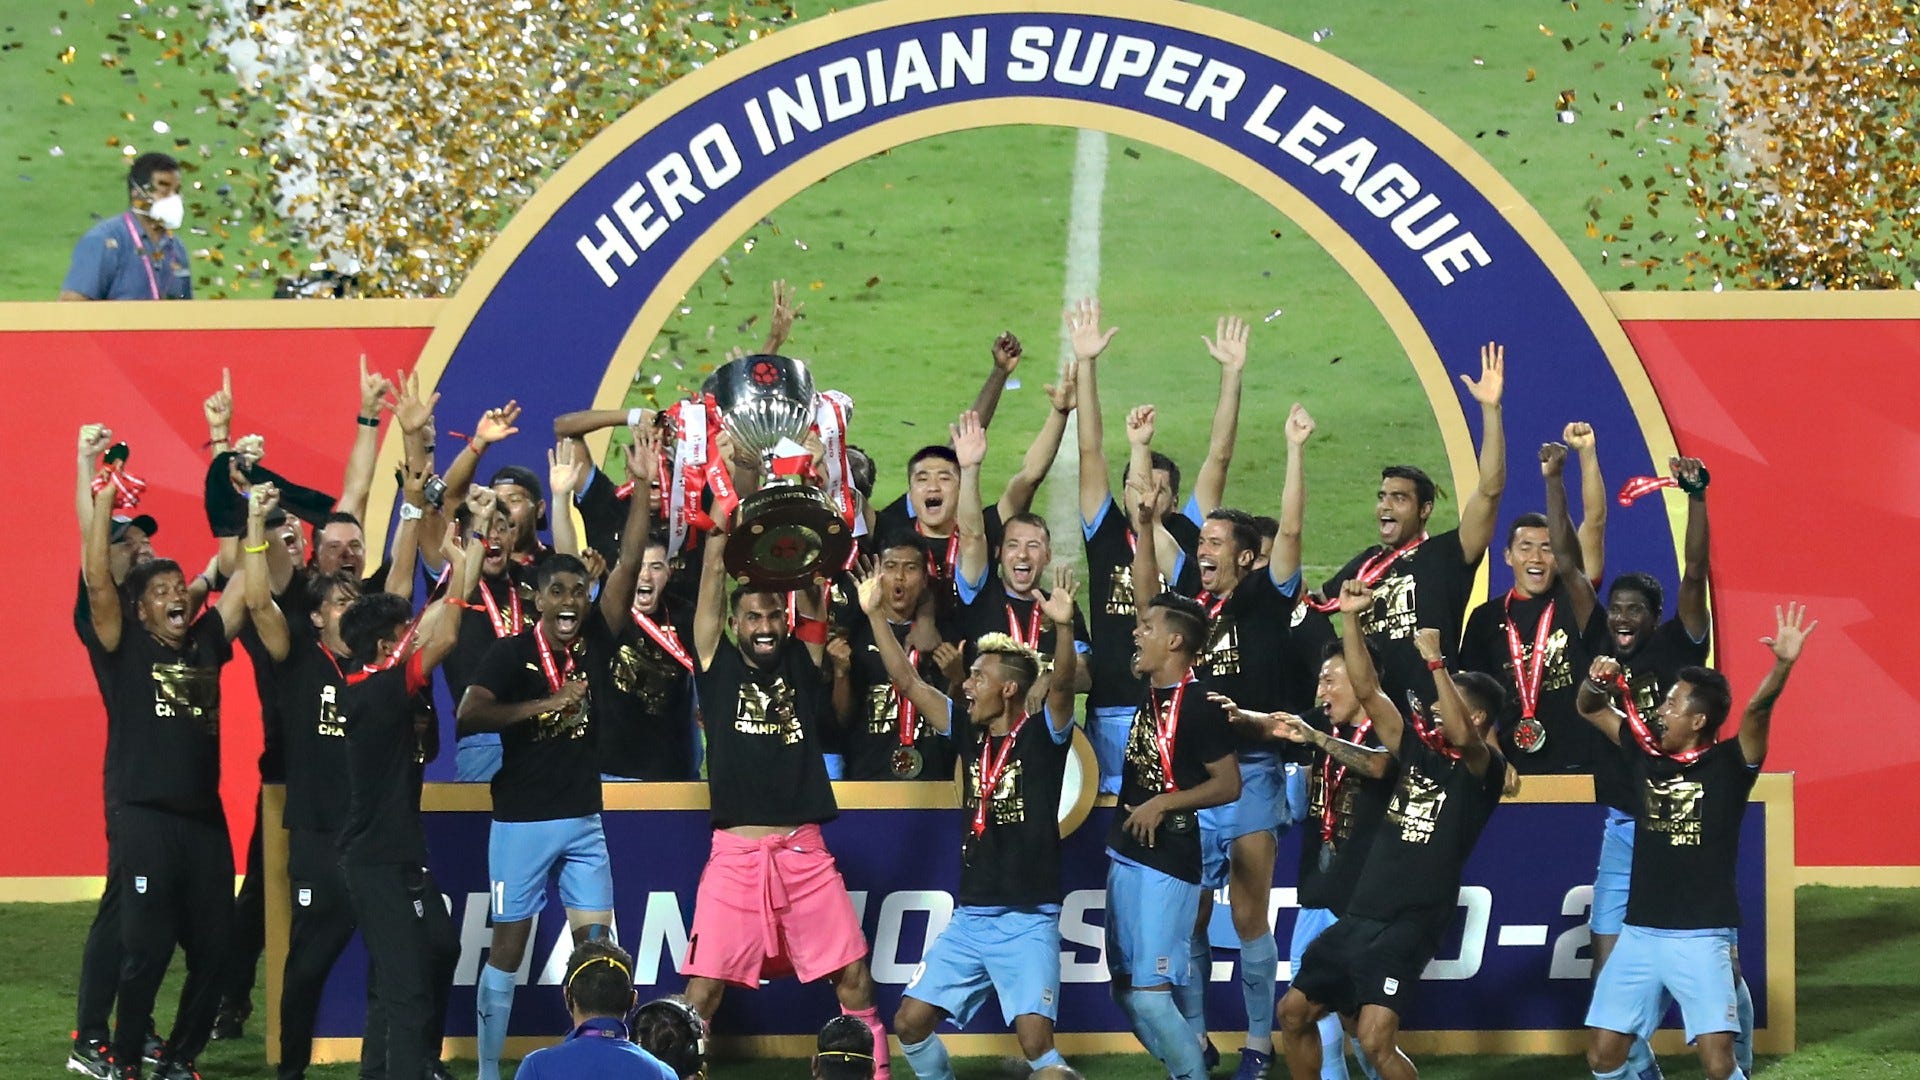 Mumbai City ISL 7 champions